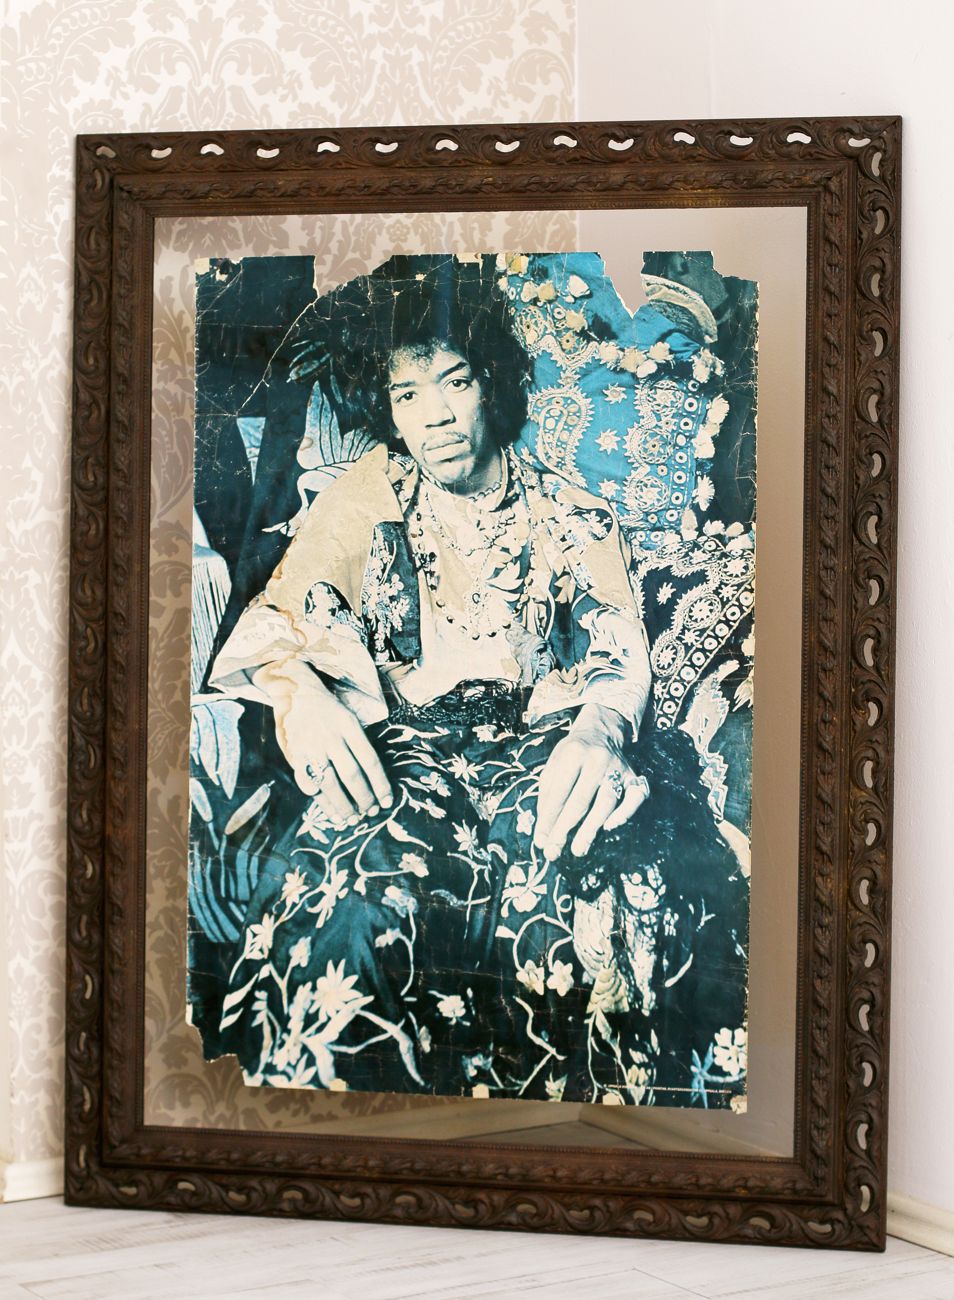 Rámování starého plakátu Jimmi Hendrix do zrezlého ornamentálního rámu mezi dvě skla | © Frame-it.cz